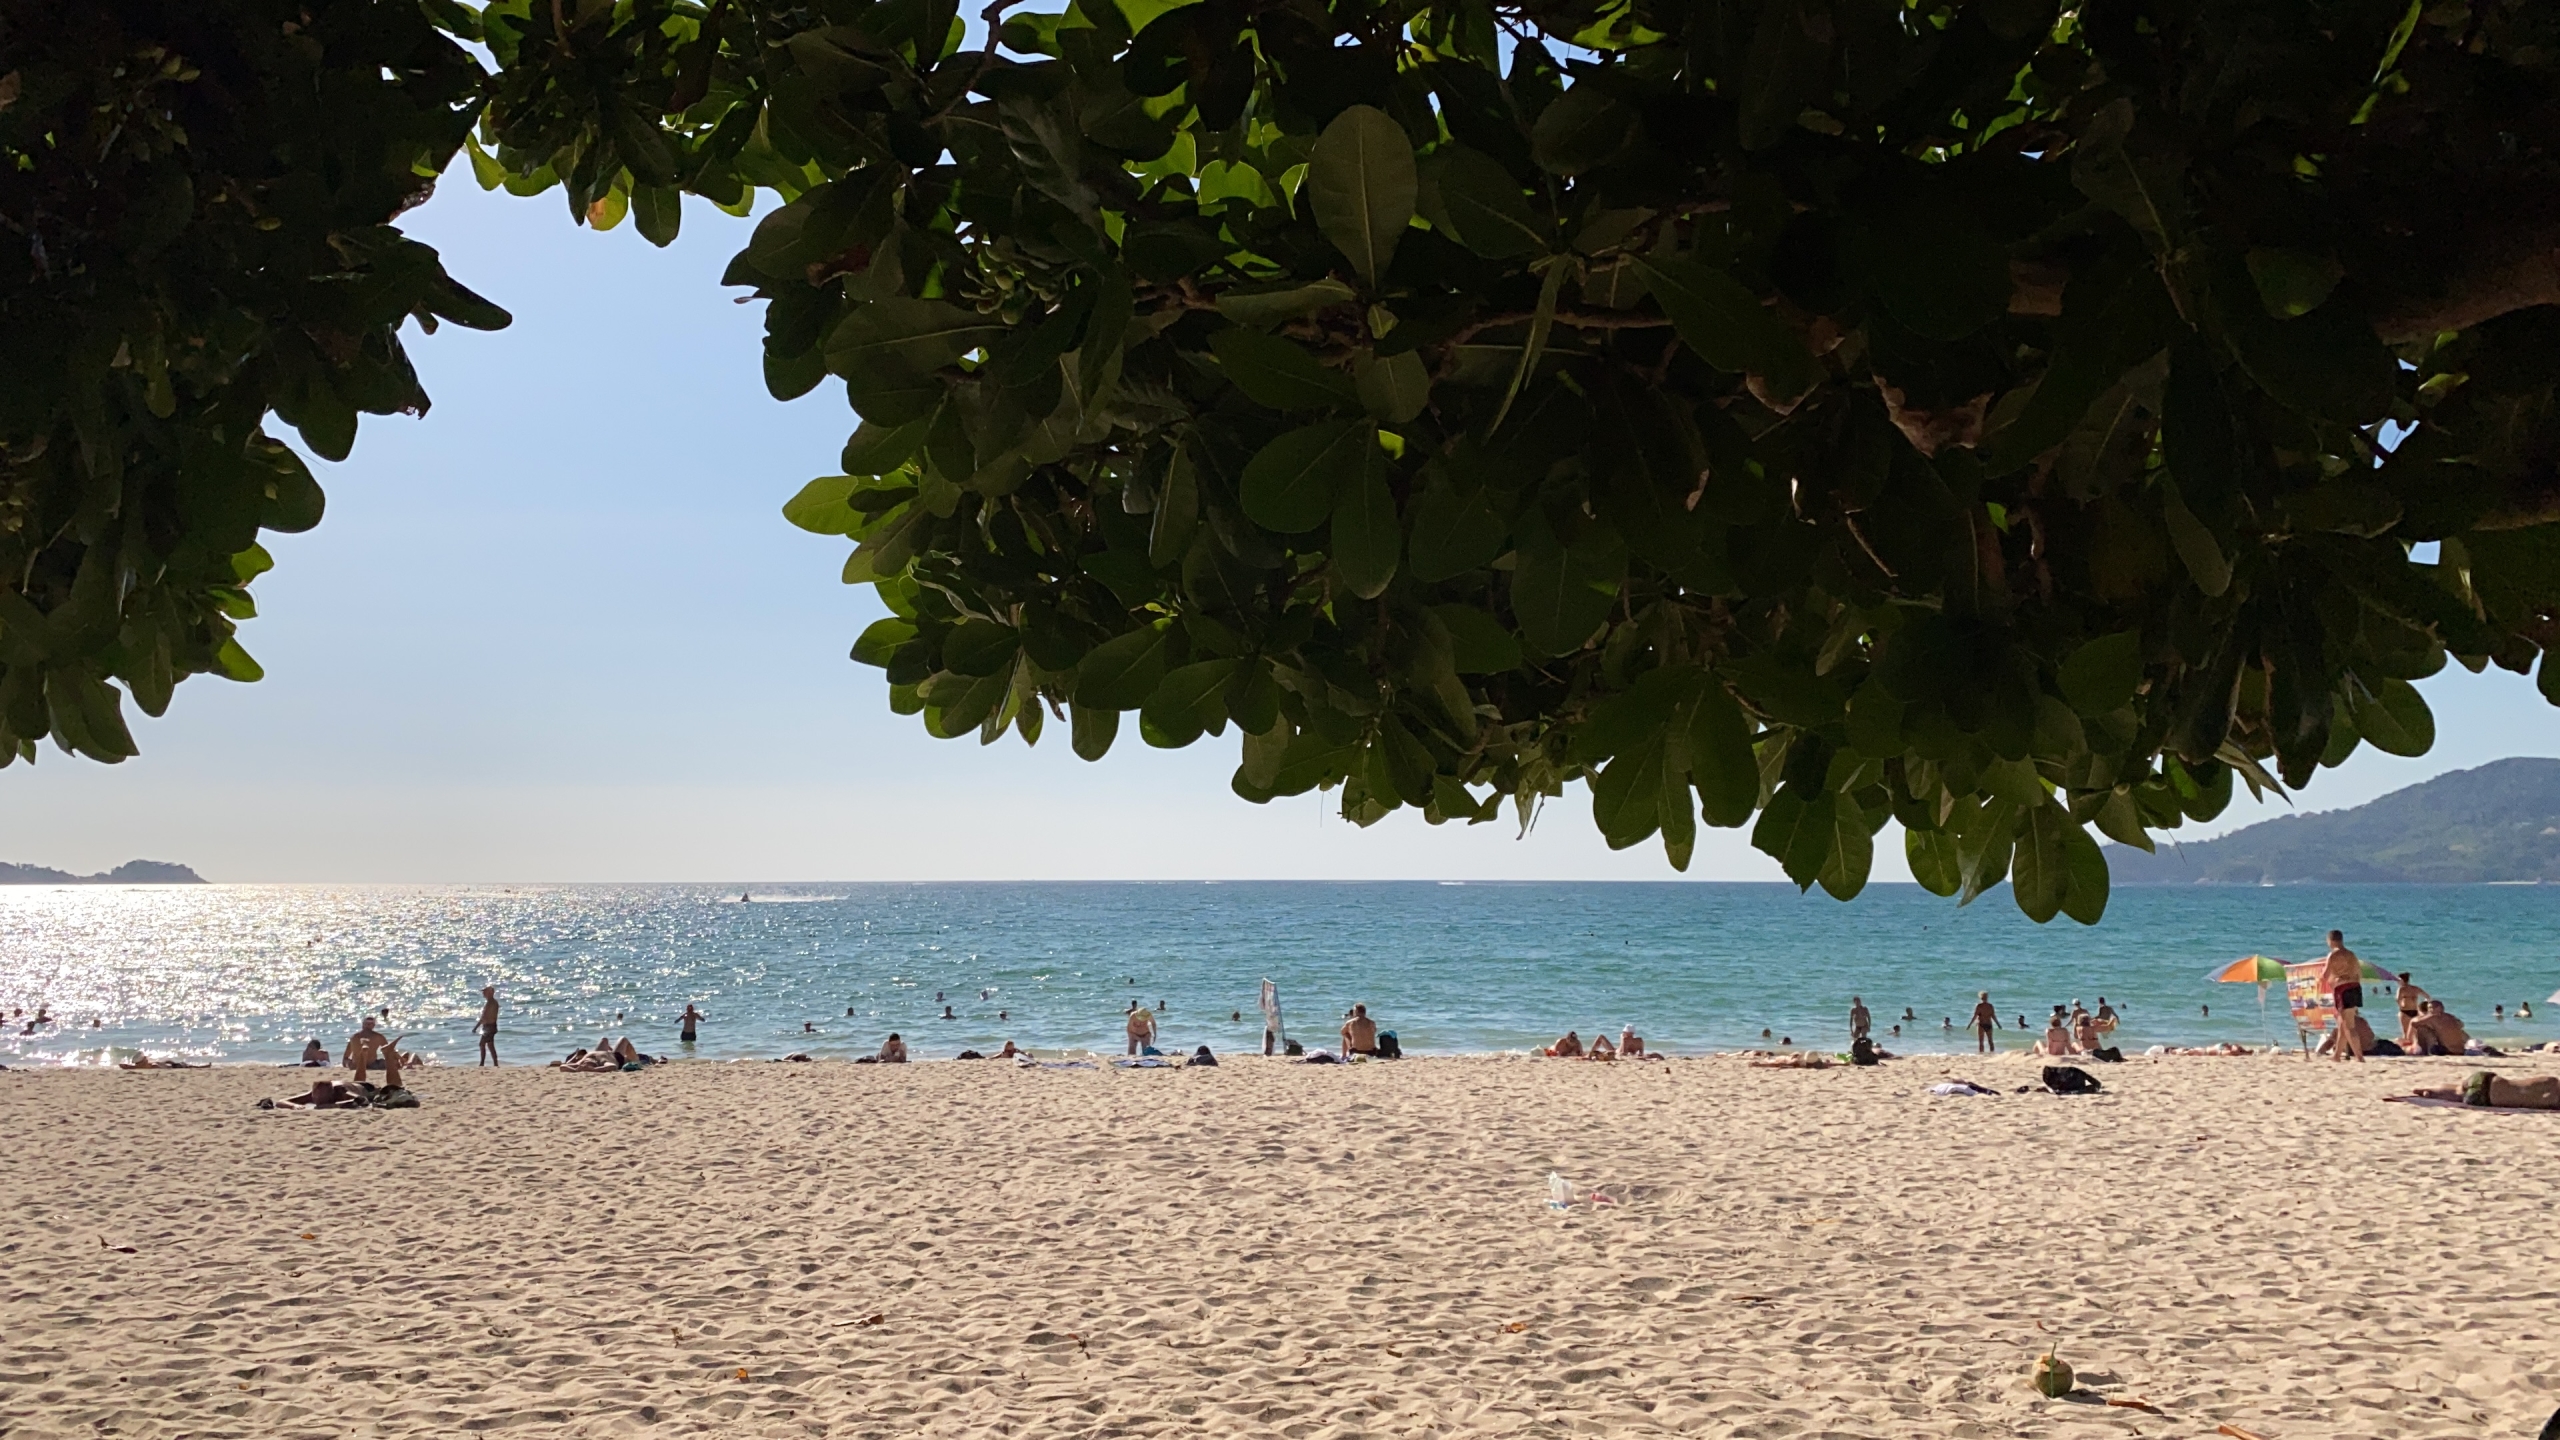 Plán cesty na 14 dní po Thajsku - pohľad na pláž spod stromu